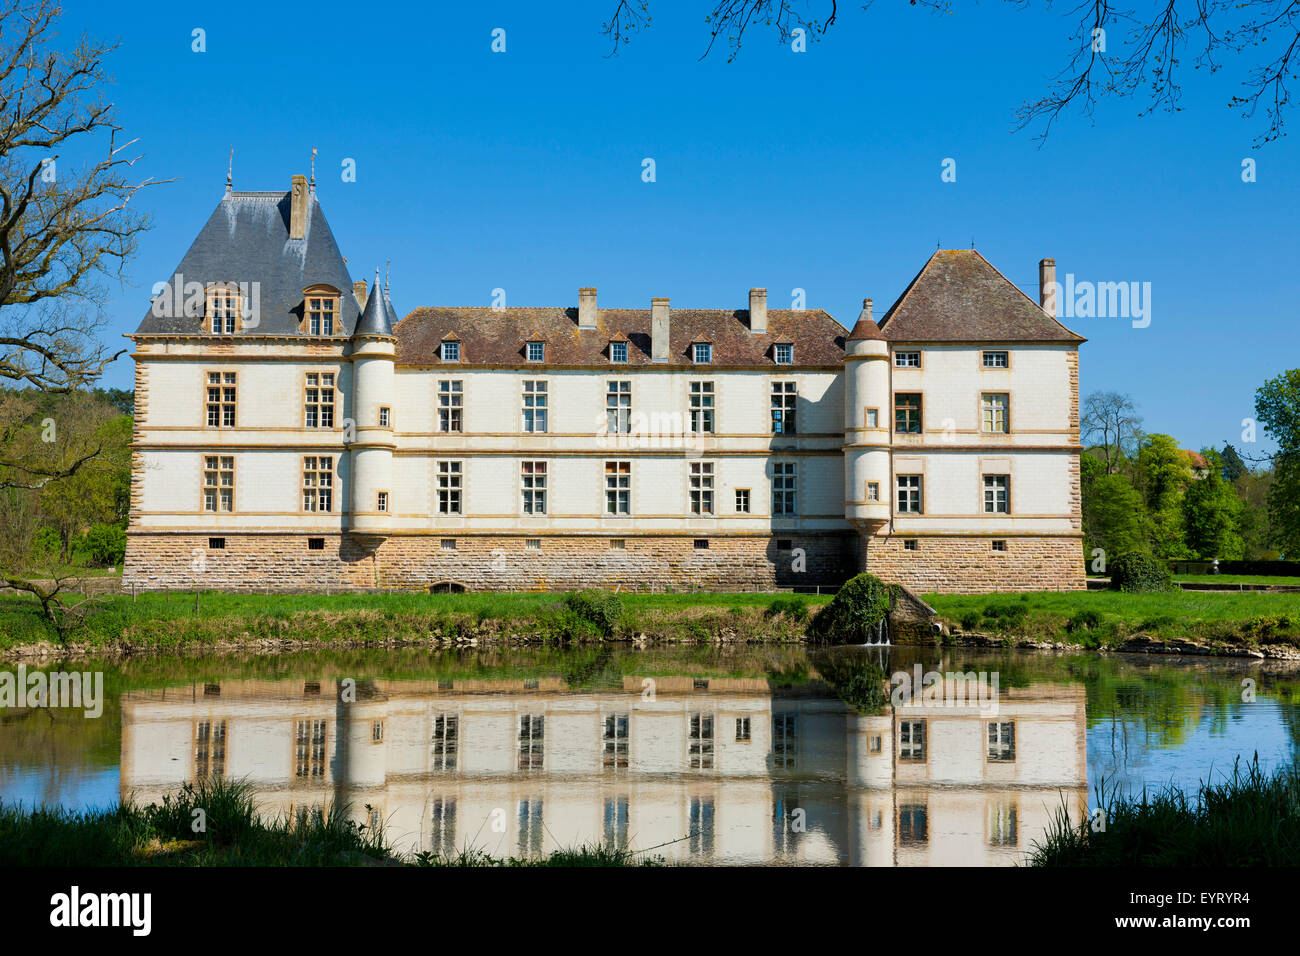 Château de Cormatin, west facade, France, Stock Photo